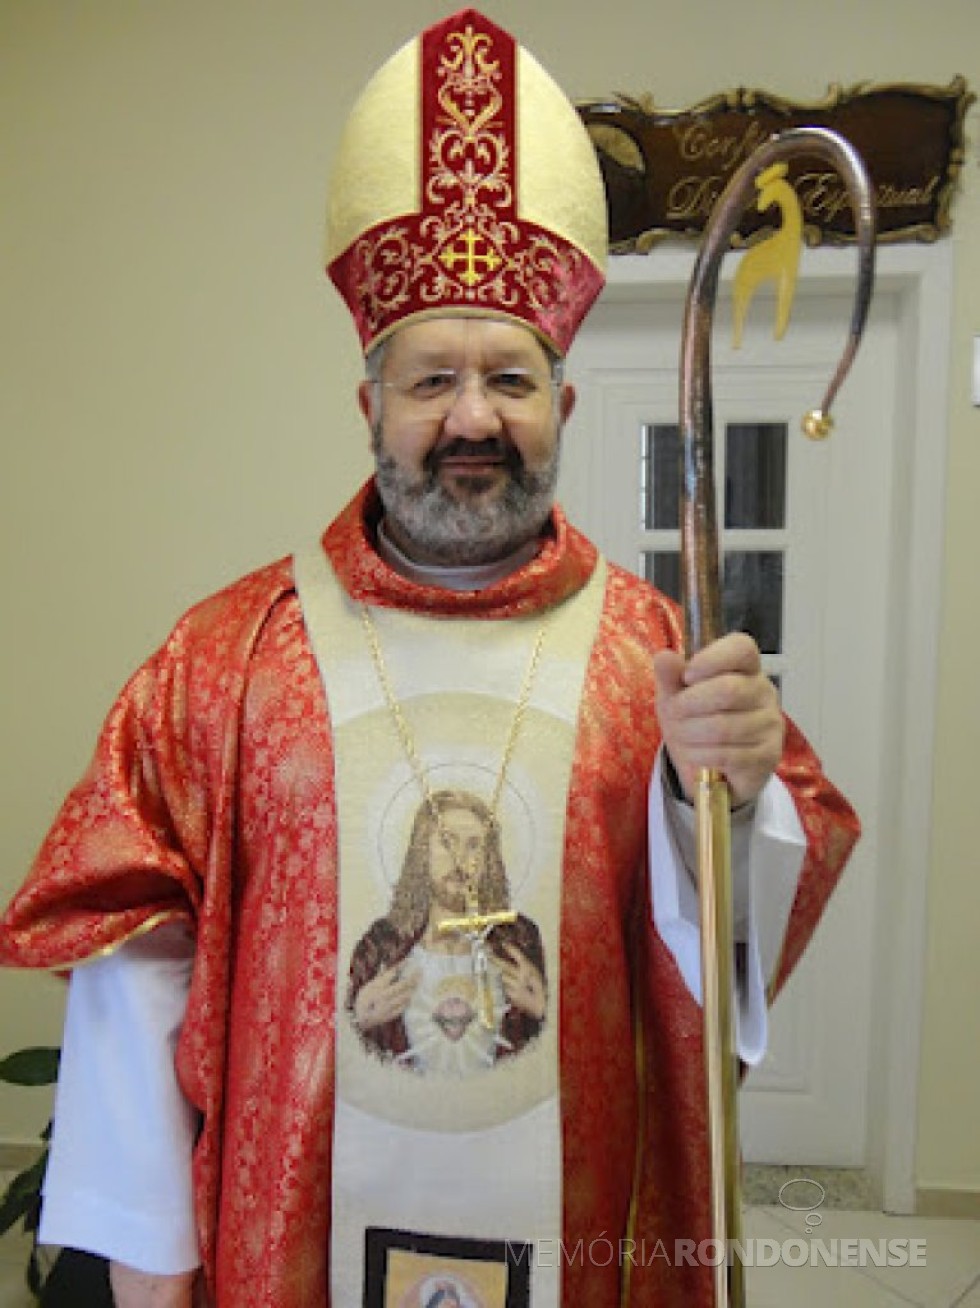 || Bispo João Carlos Seneme que assumiu a diocese de Toledo, em agosto de 2013.
Imagem: Acervo Projeto Memória Rondonense - FOTO 4 -